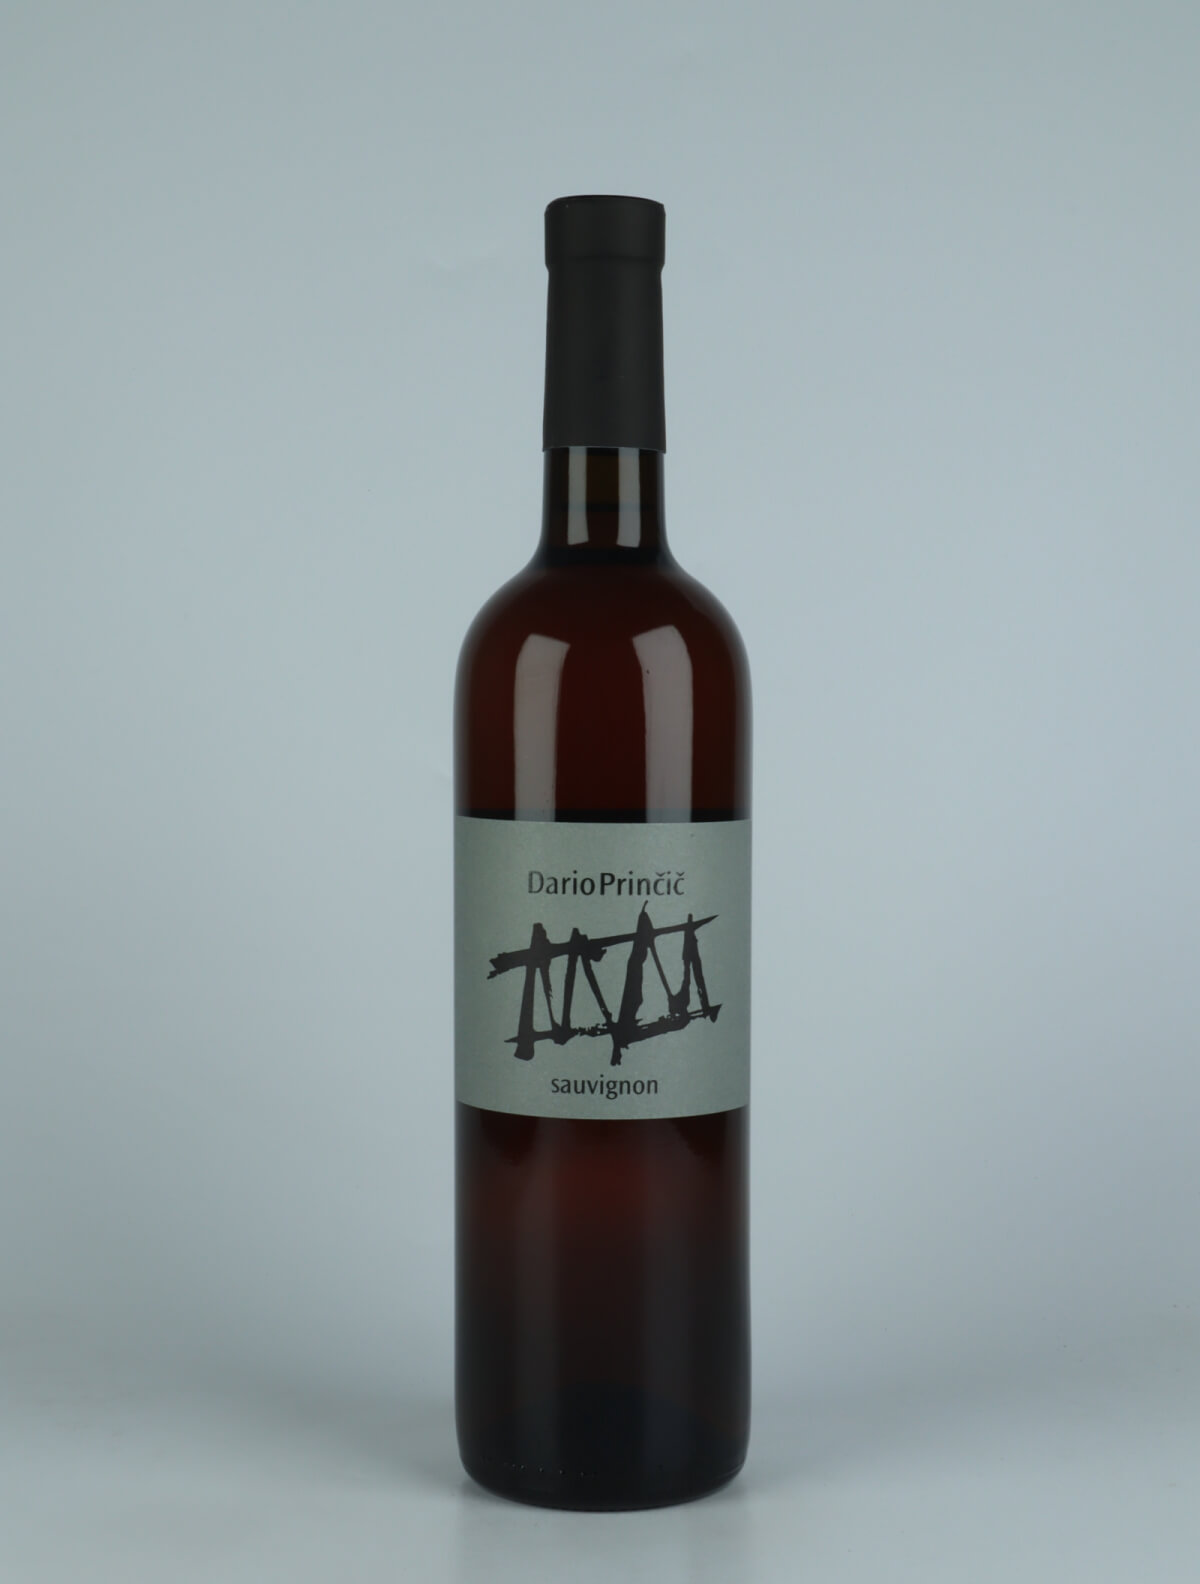 A bottle 2019 Sauvignon Orange wine from Dario Princic, Friuli in Italy